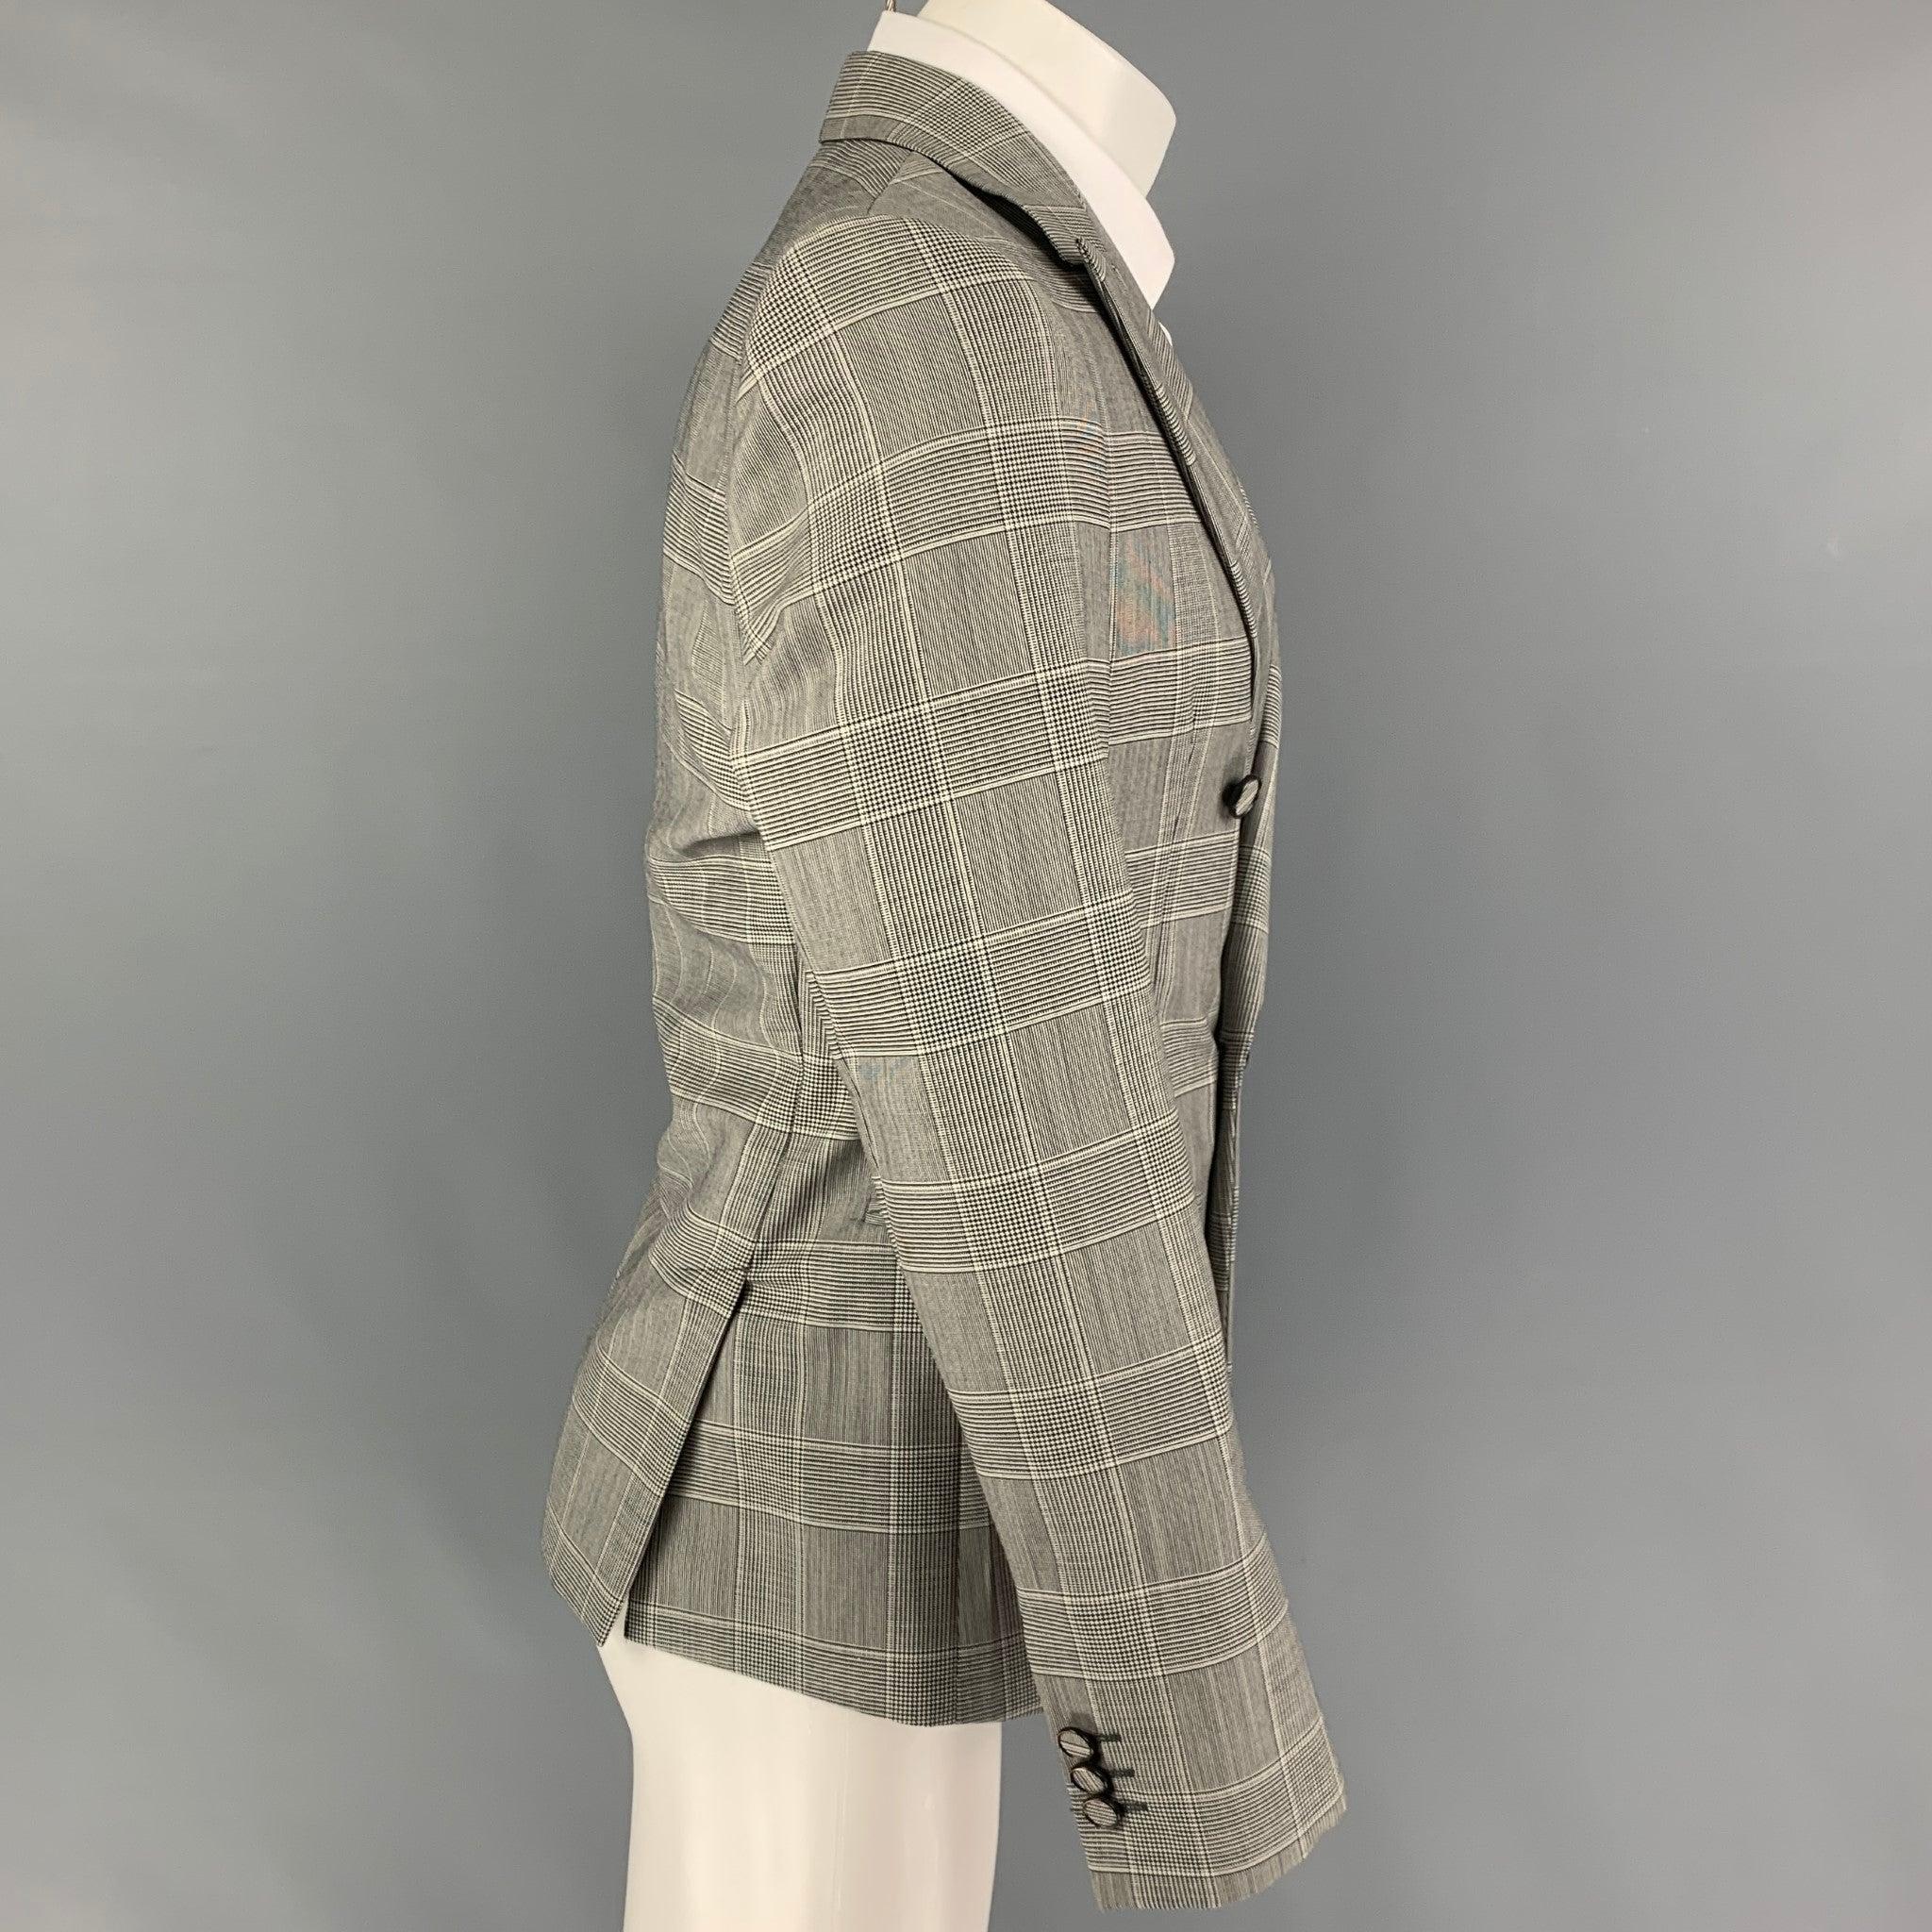 EMPORIO ARMANI
Le manteau de sport est en laine glenplaid noire et blanche avec une doublure complète, un revers en pointe, des poches fendues, une double fente d'aération au dos et une fermeture à double boutonnage.
Fabriqué en Italie. Très bon